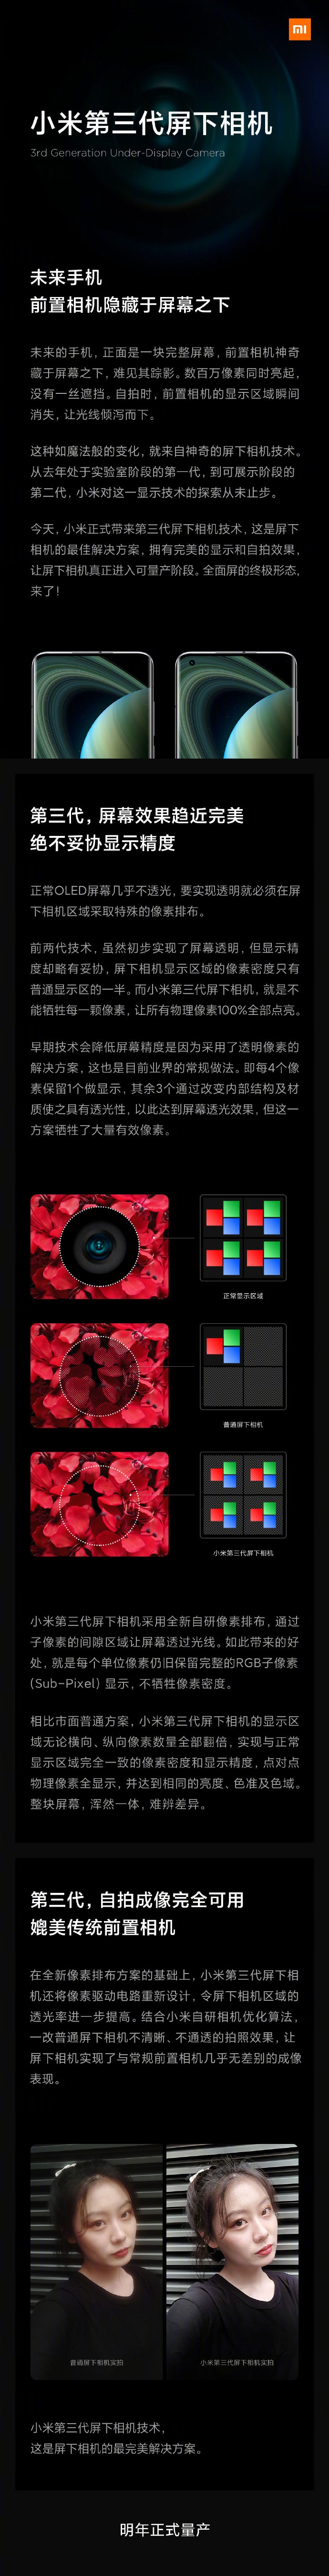 小米正式发布第三代屏下相机技术 最完美的全面屏